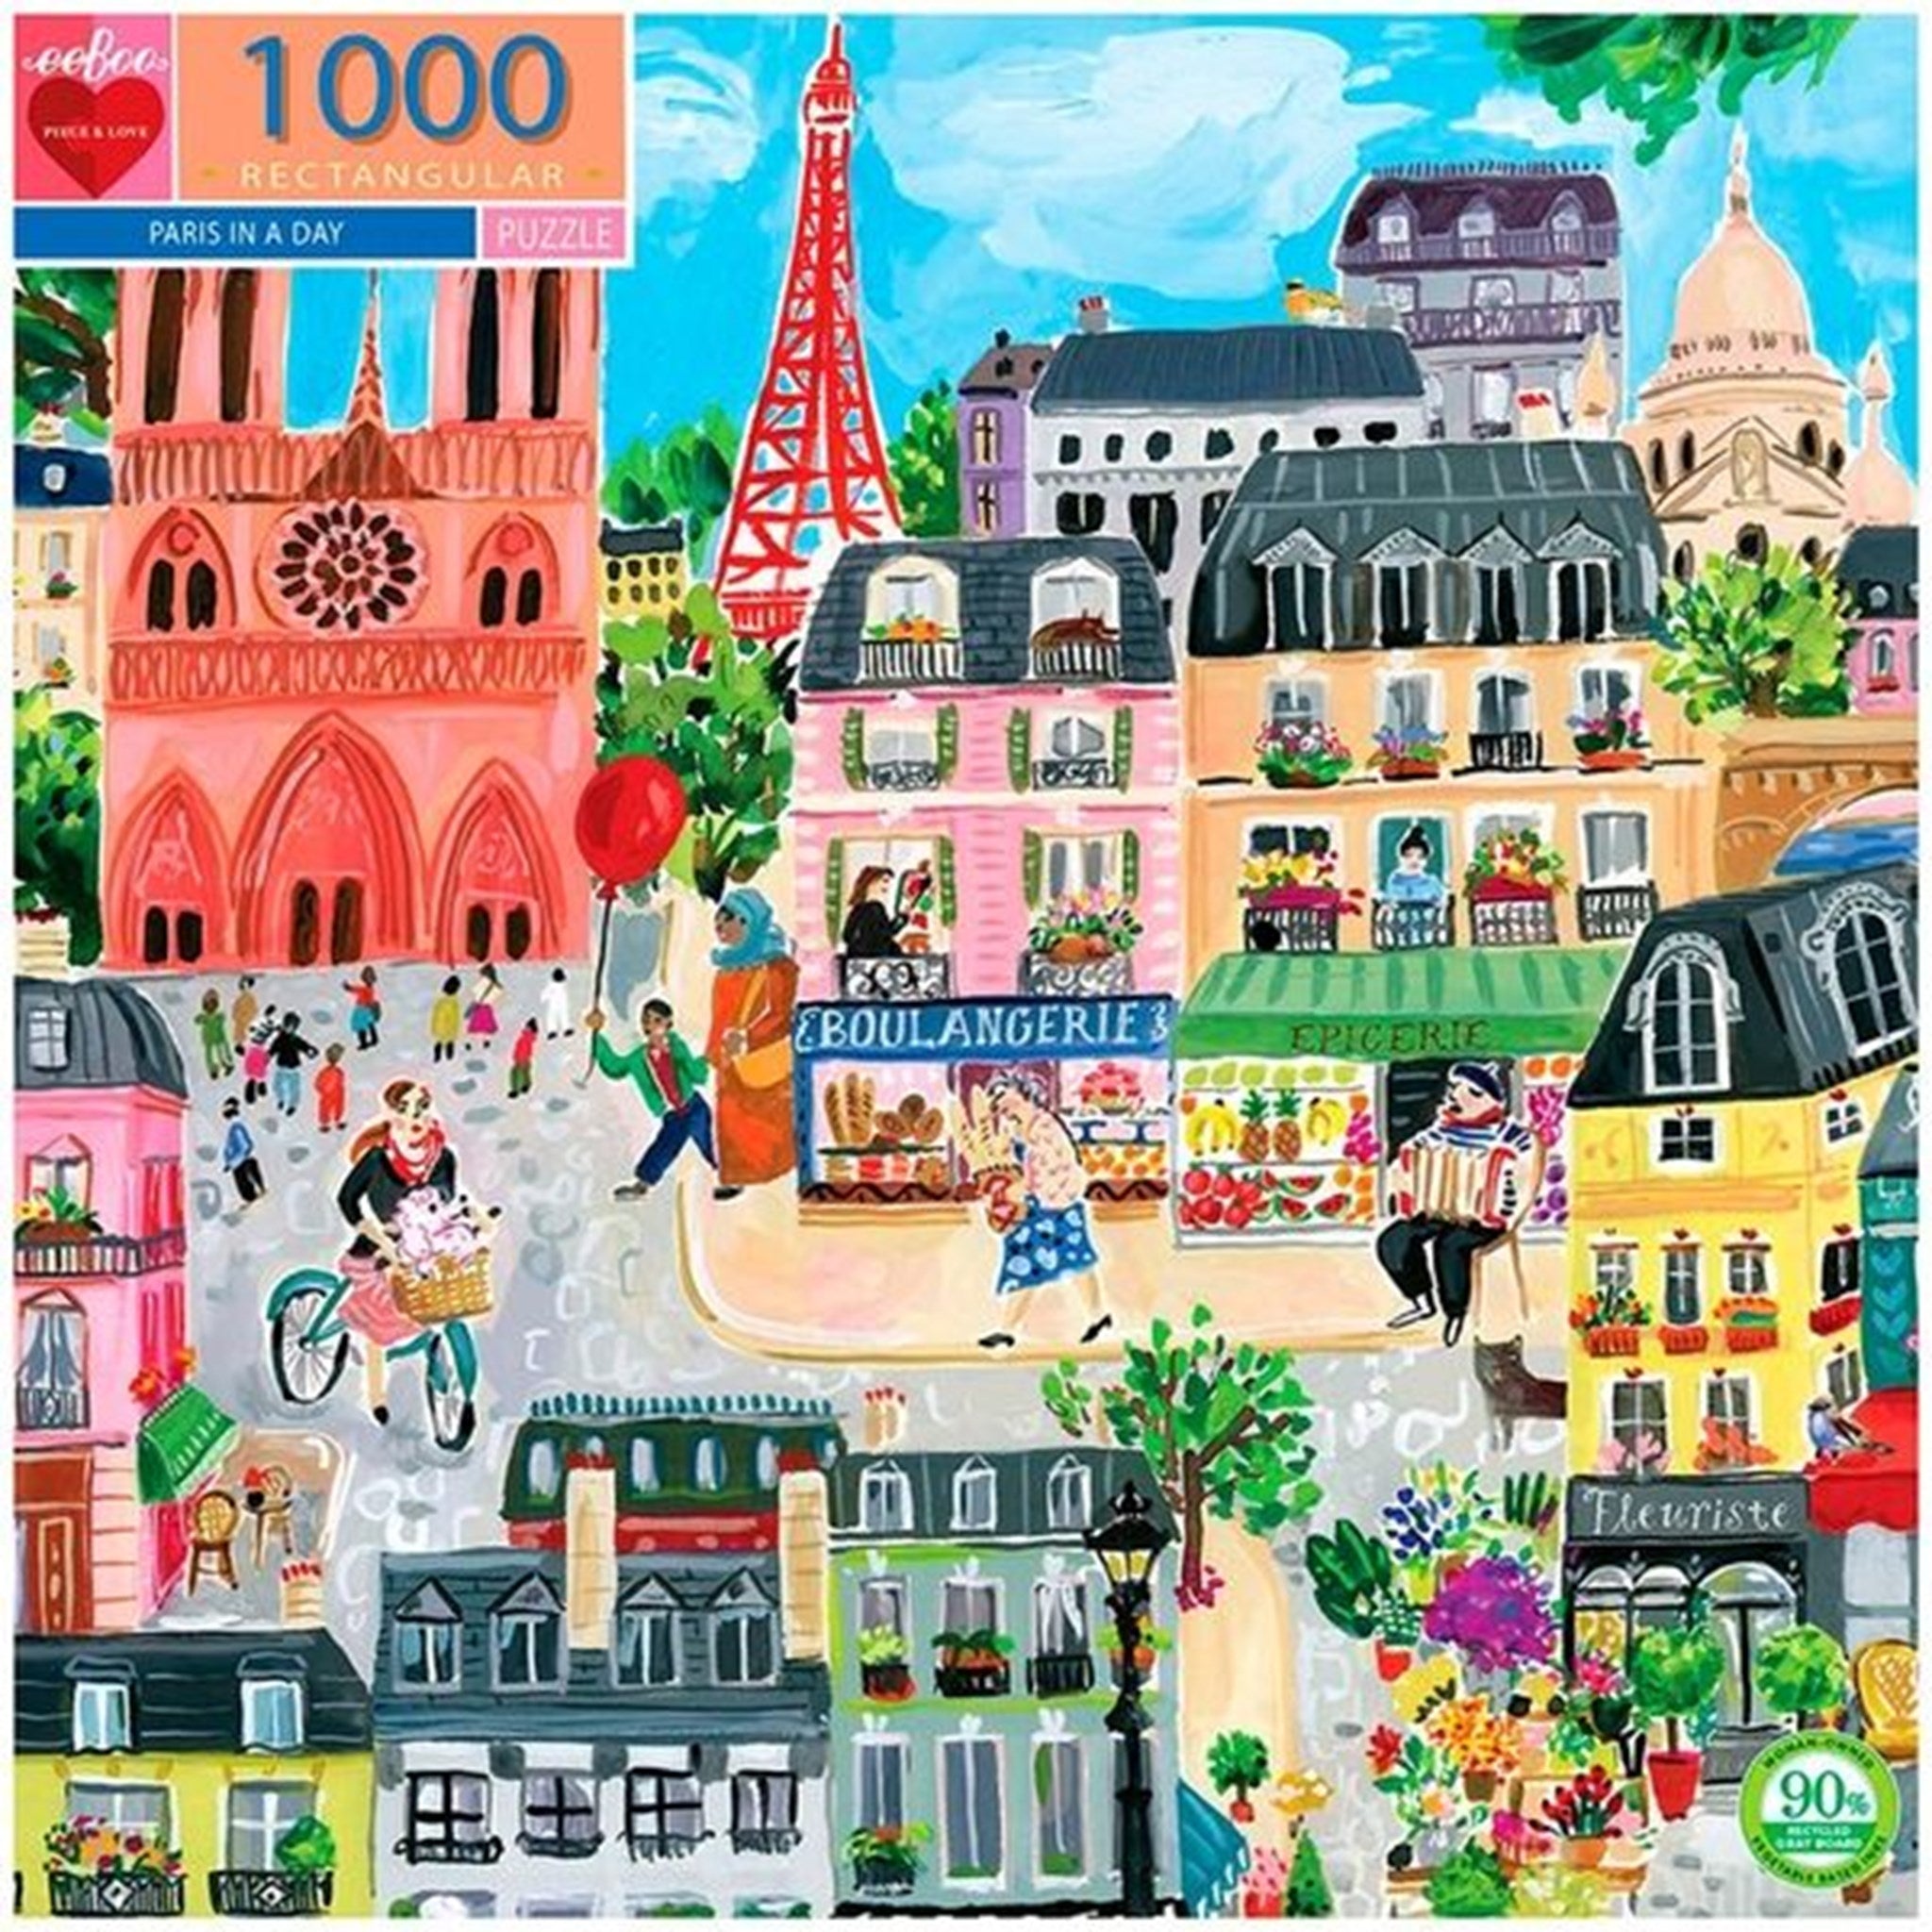 Eeboo Puzzle 1000 Pieces - Paris